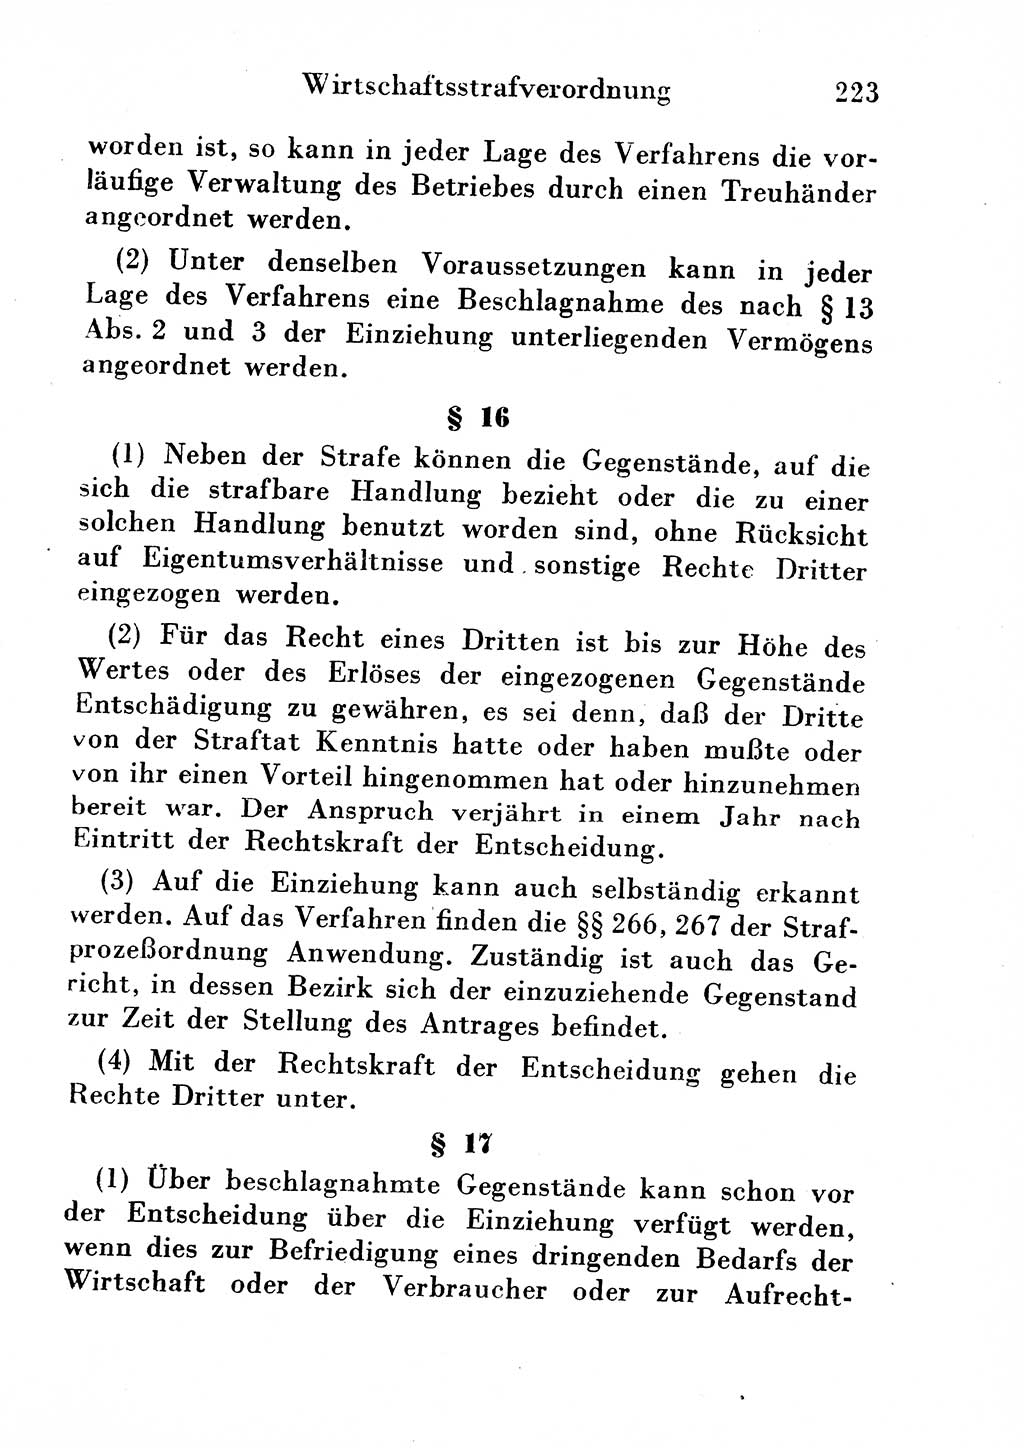 Strafgesetzbuch (StGB) und andere Strafgesetze [Deutsche Demokratische Republik (DDR)] 1954, Seite 223 (StGB Strafges. DDR 1954, S. 223)